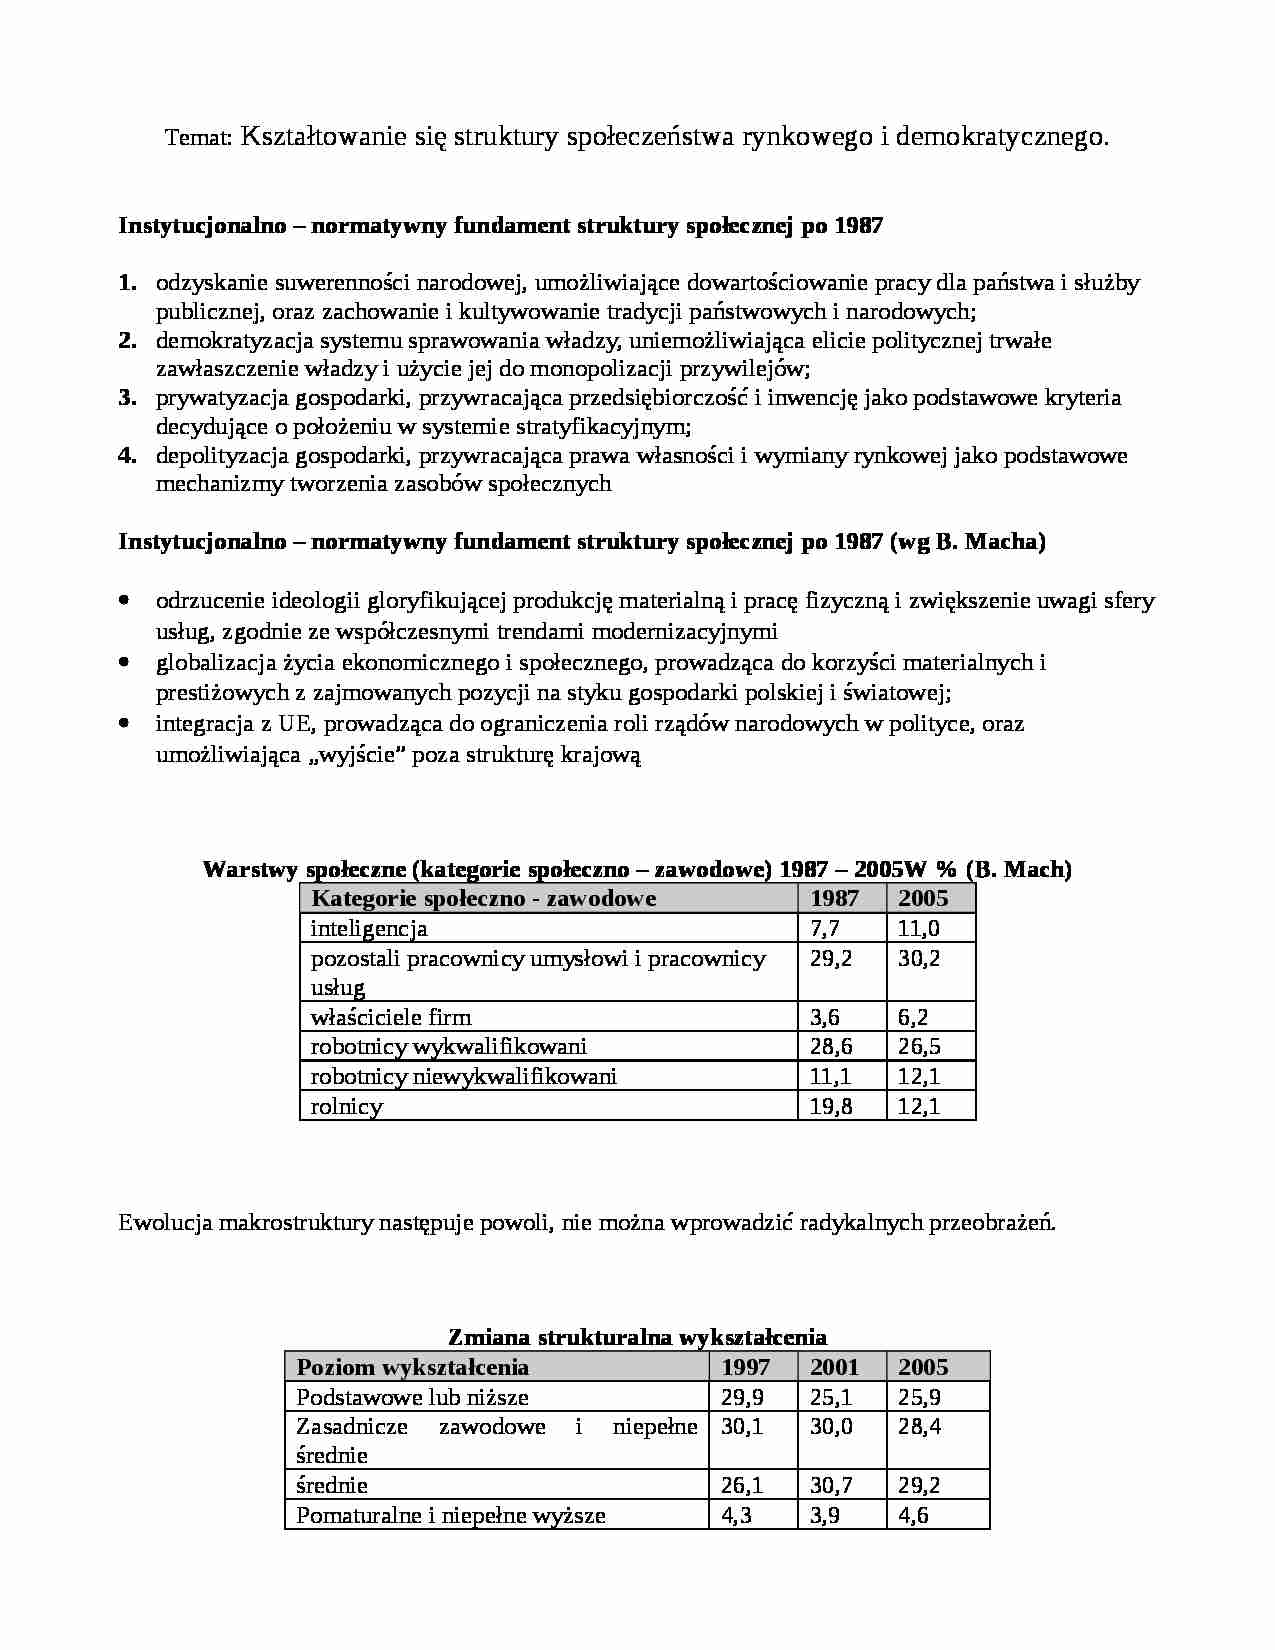 Dynamika zmiany współczesnego społeczeństwa polskiego - wykład 4 - strona 1